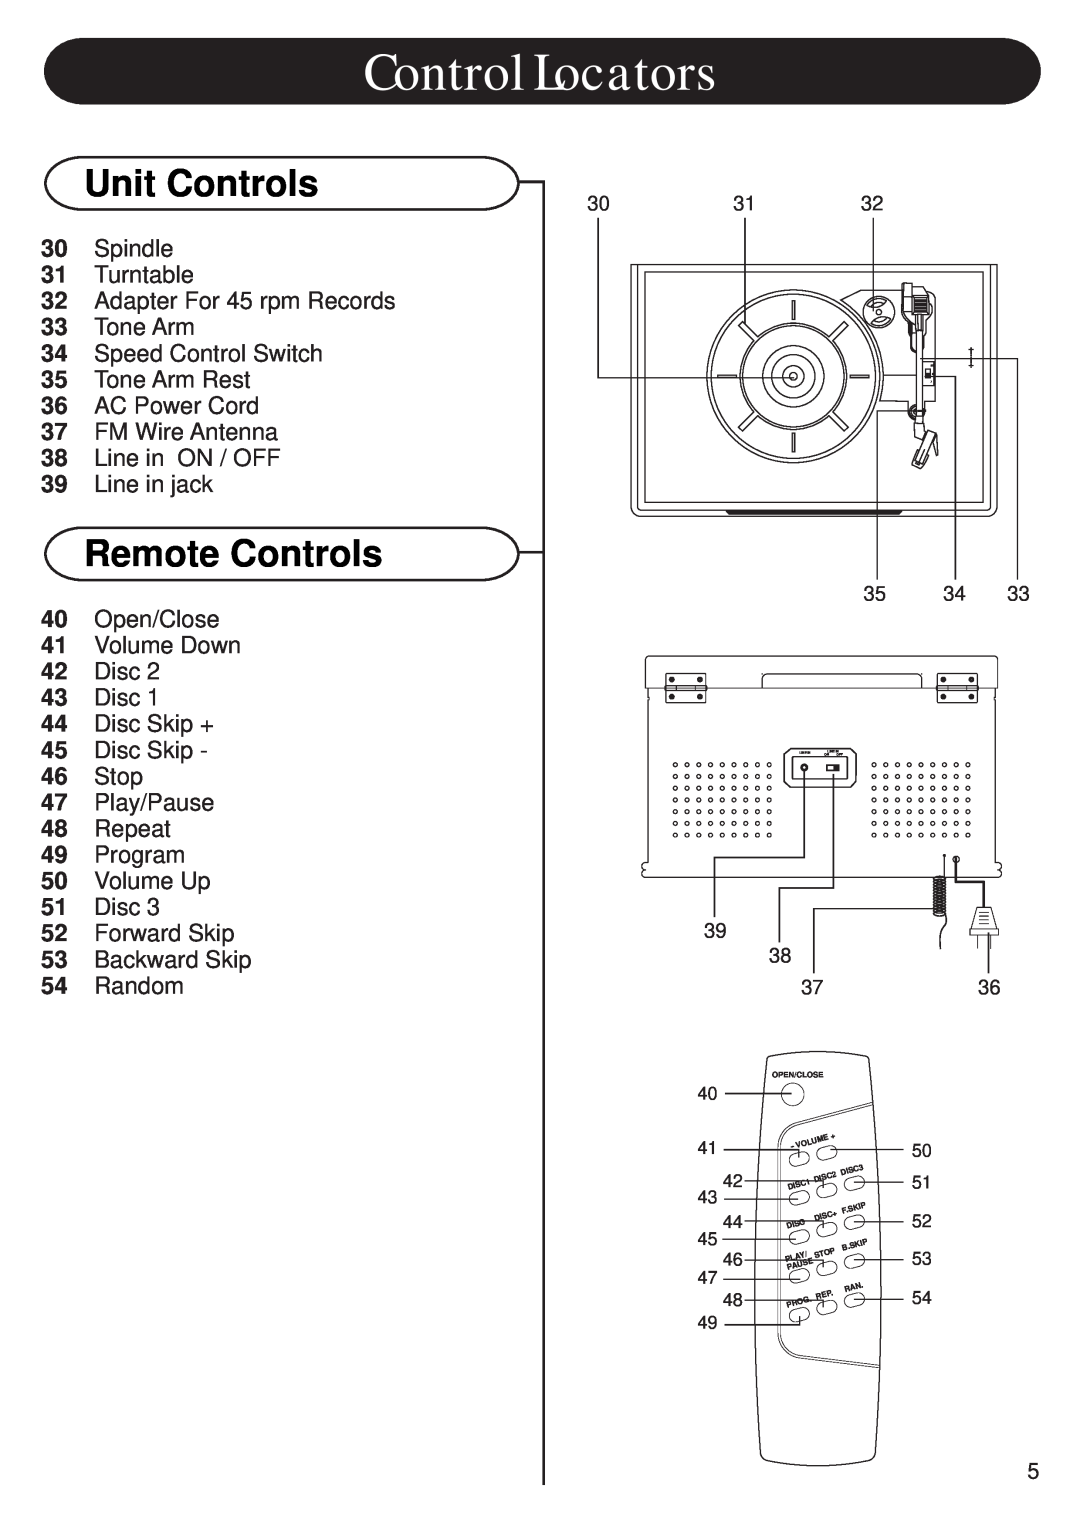 Crosley CR703 instruction manual Remote Controls, Control Locators, Unit Controls 